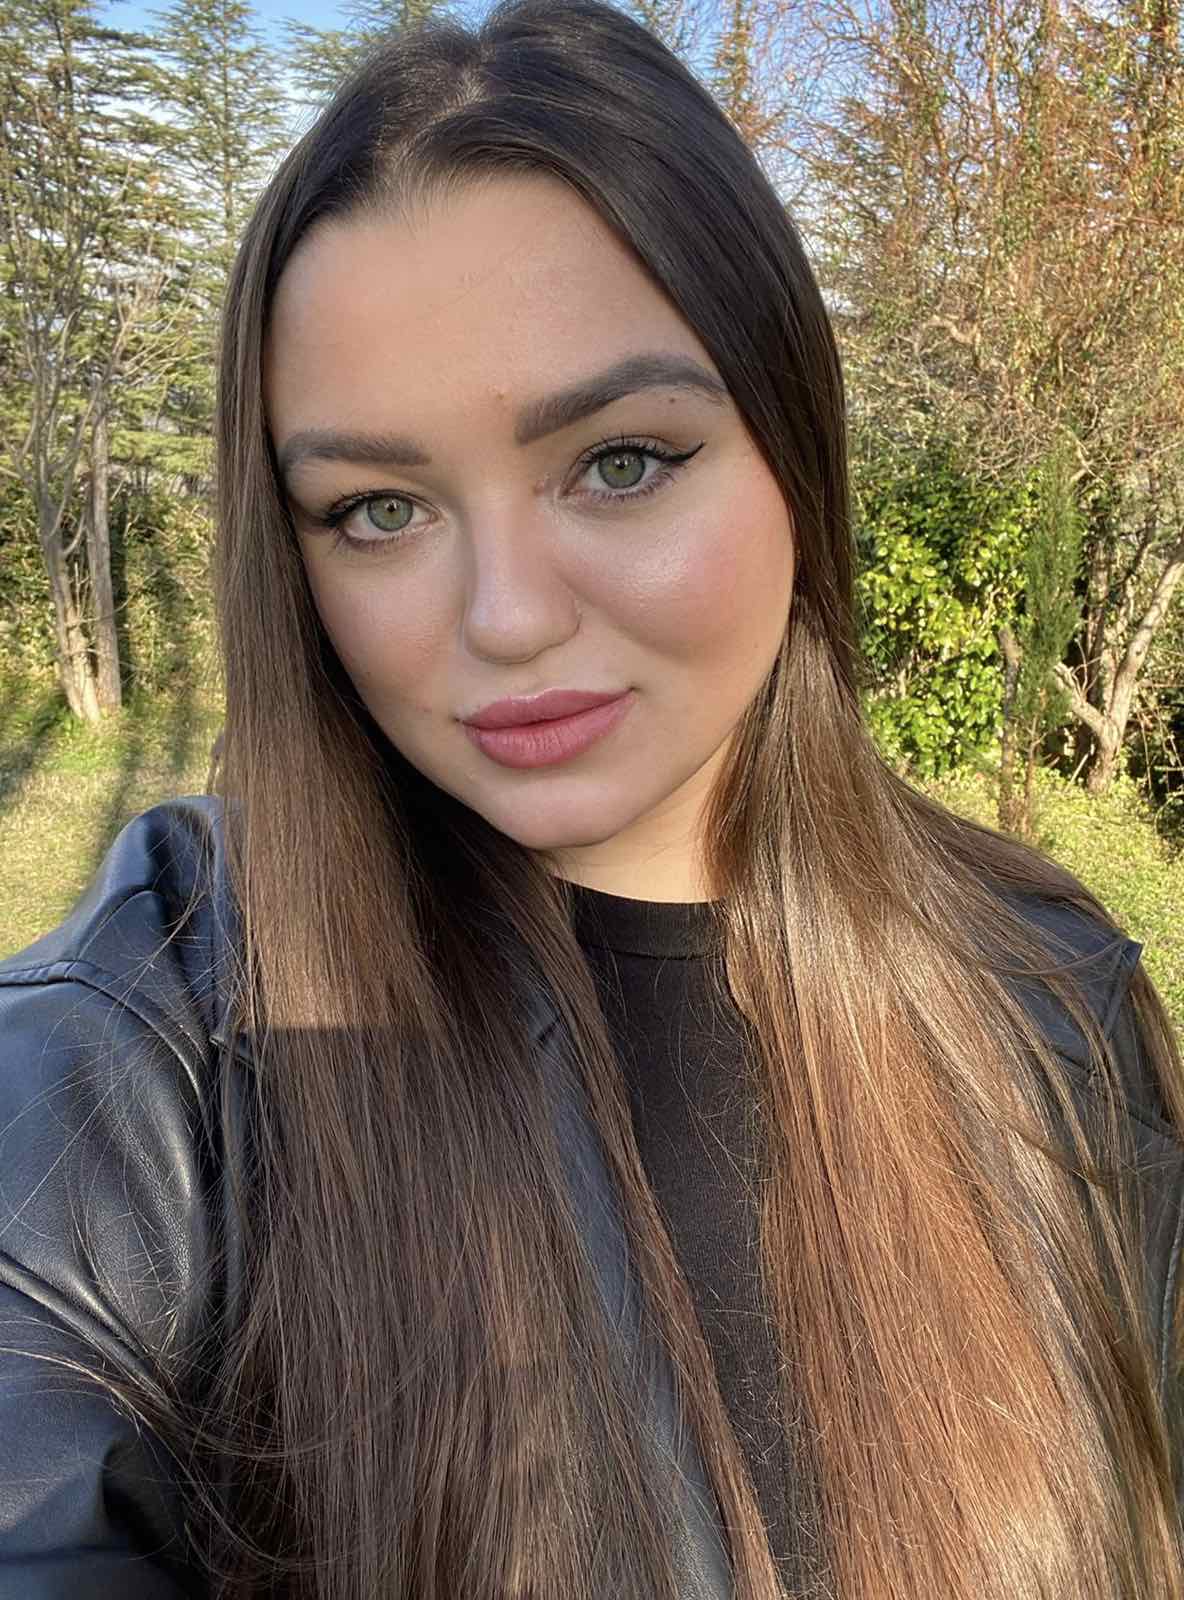 Sofia, 21